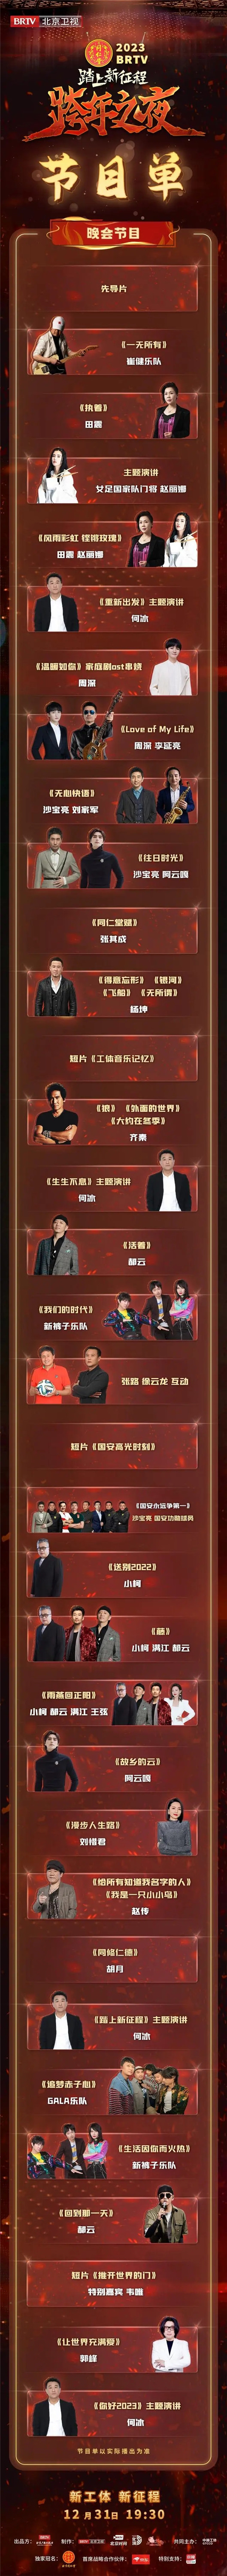 唱响年代金曲 北京卫视2023跨年晚会节目单揭晓